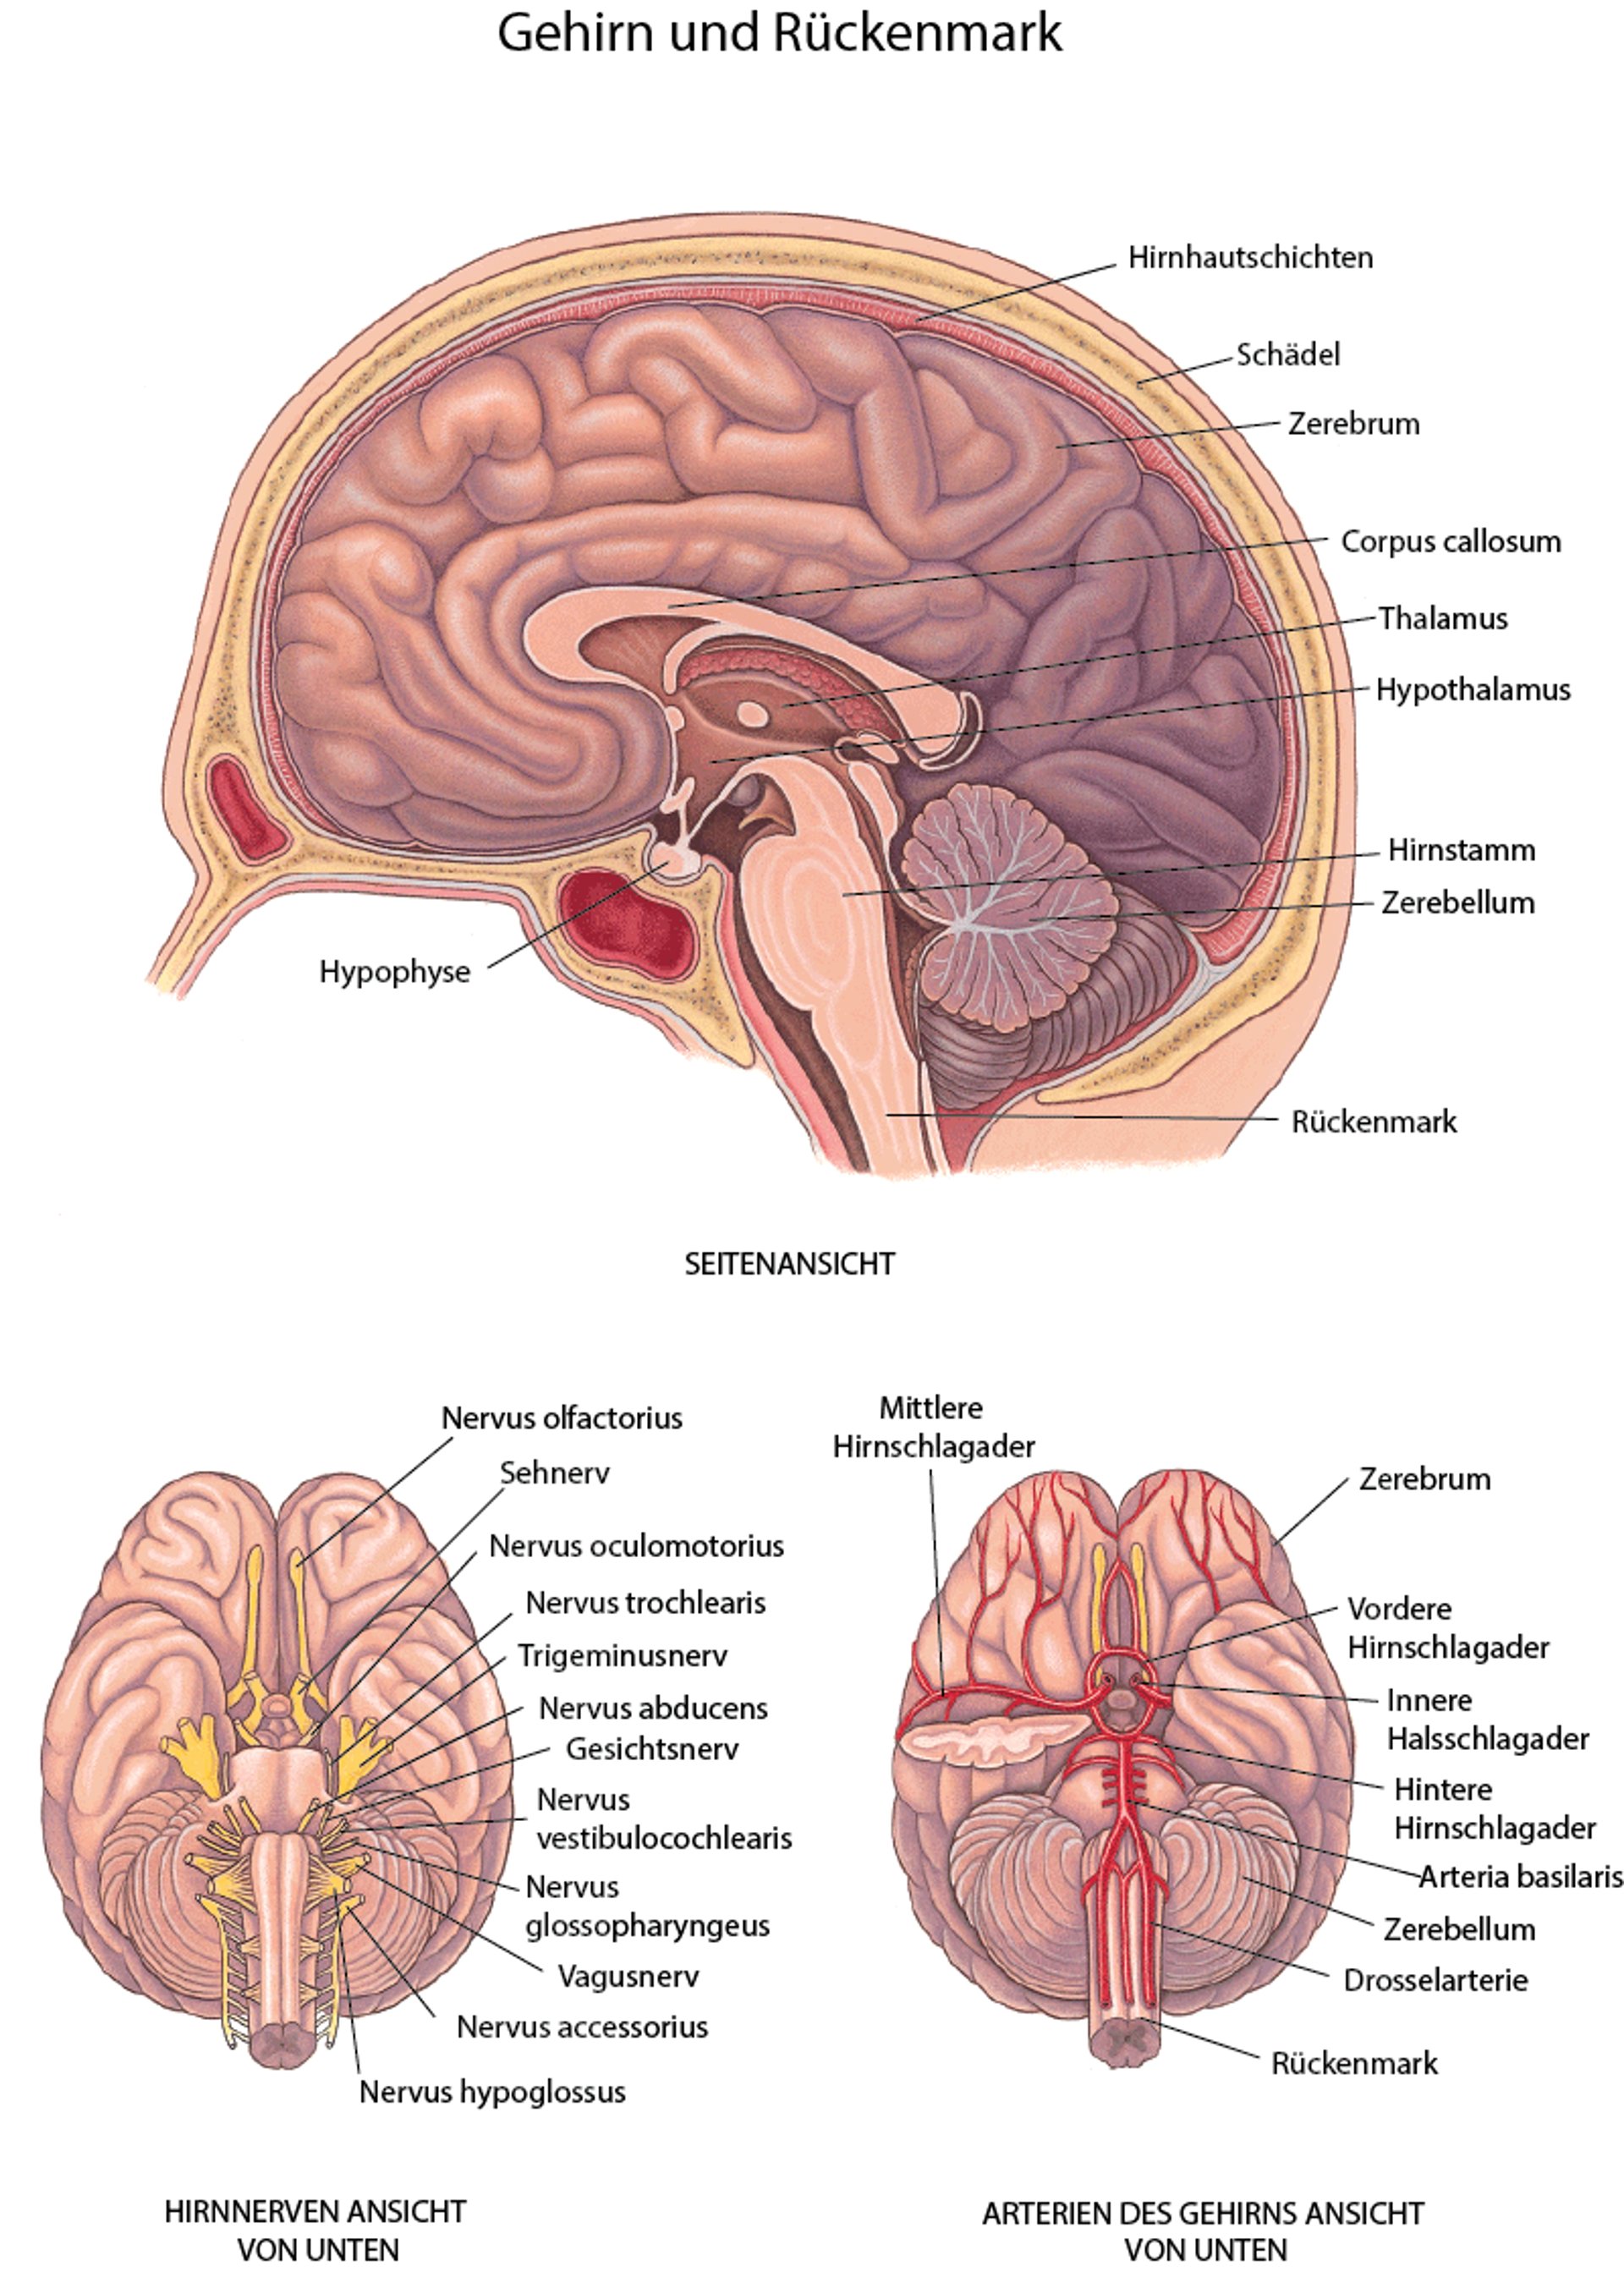 Gehirn: Nerven und Arterien